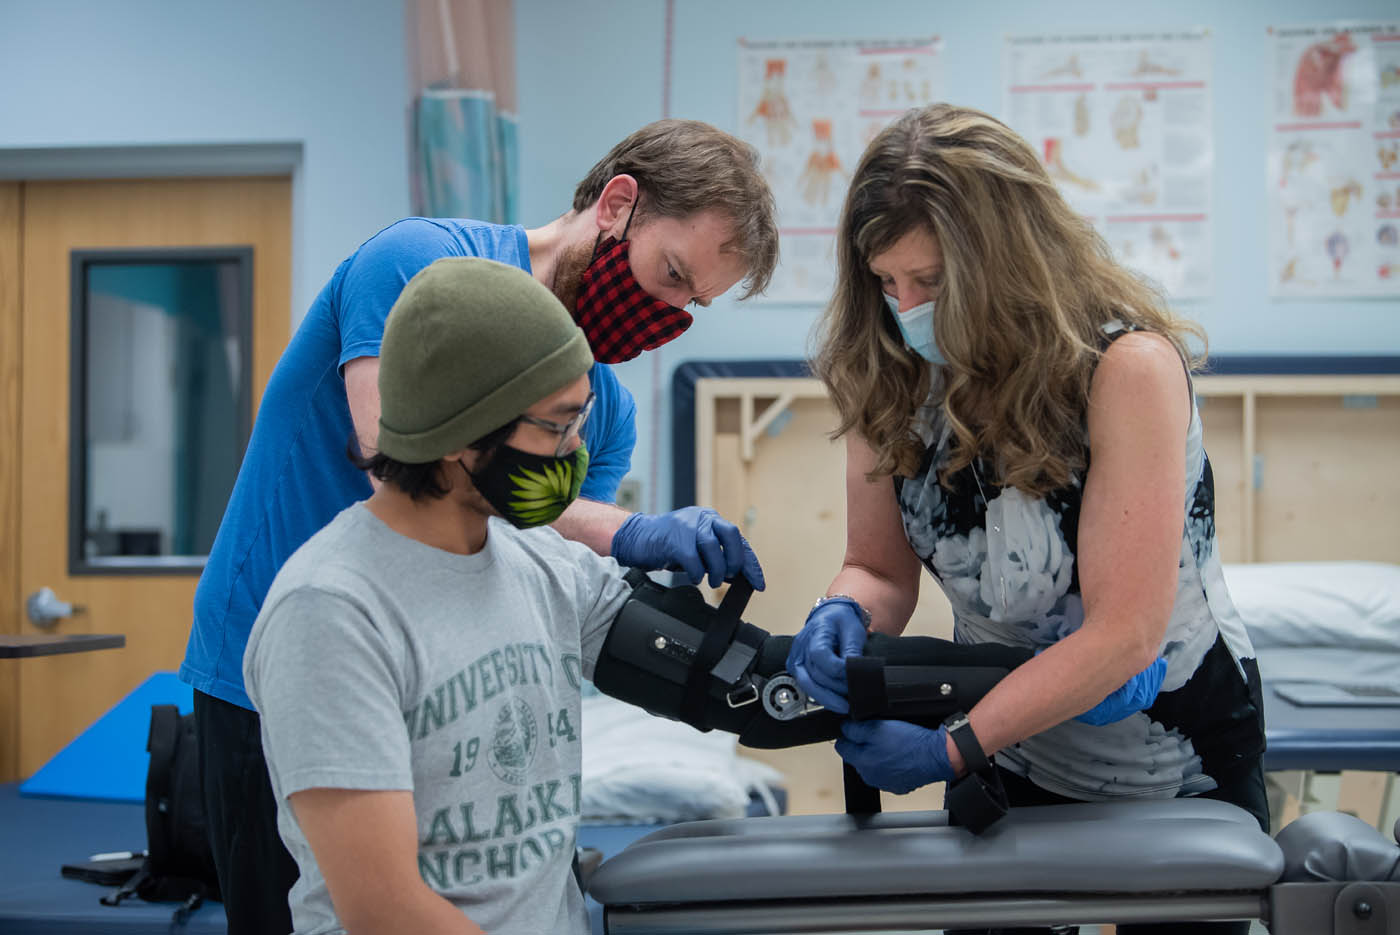 Two students assist a patient fit an arm brace